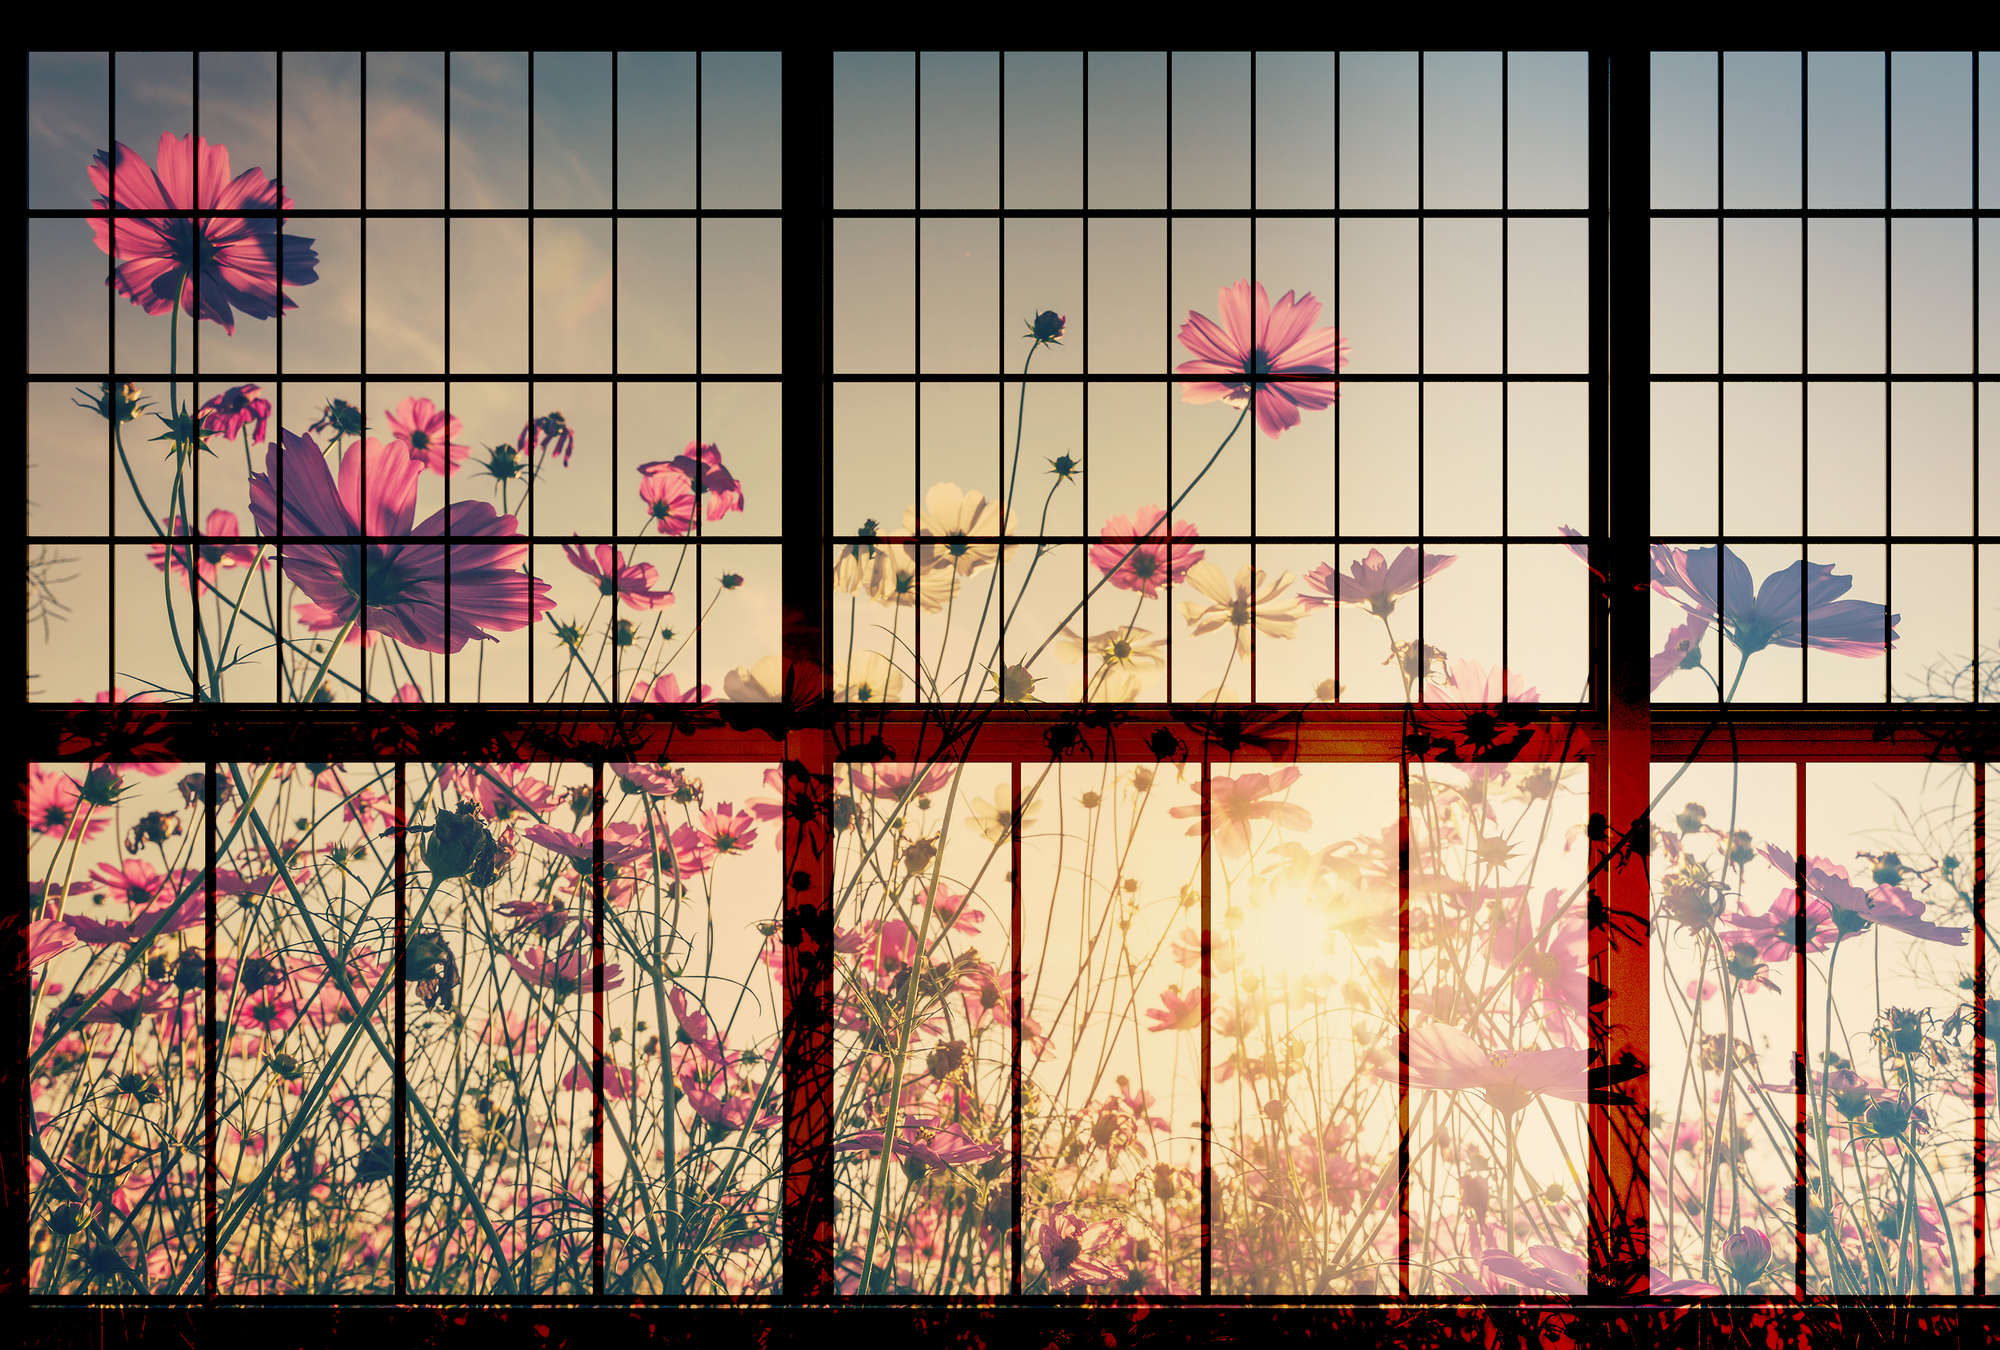             Meadow 1 - Sprossenfenster Fototapete mit Blumenwiese – Grün, Rosa | Perlmutt Glattvlies
        